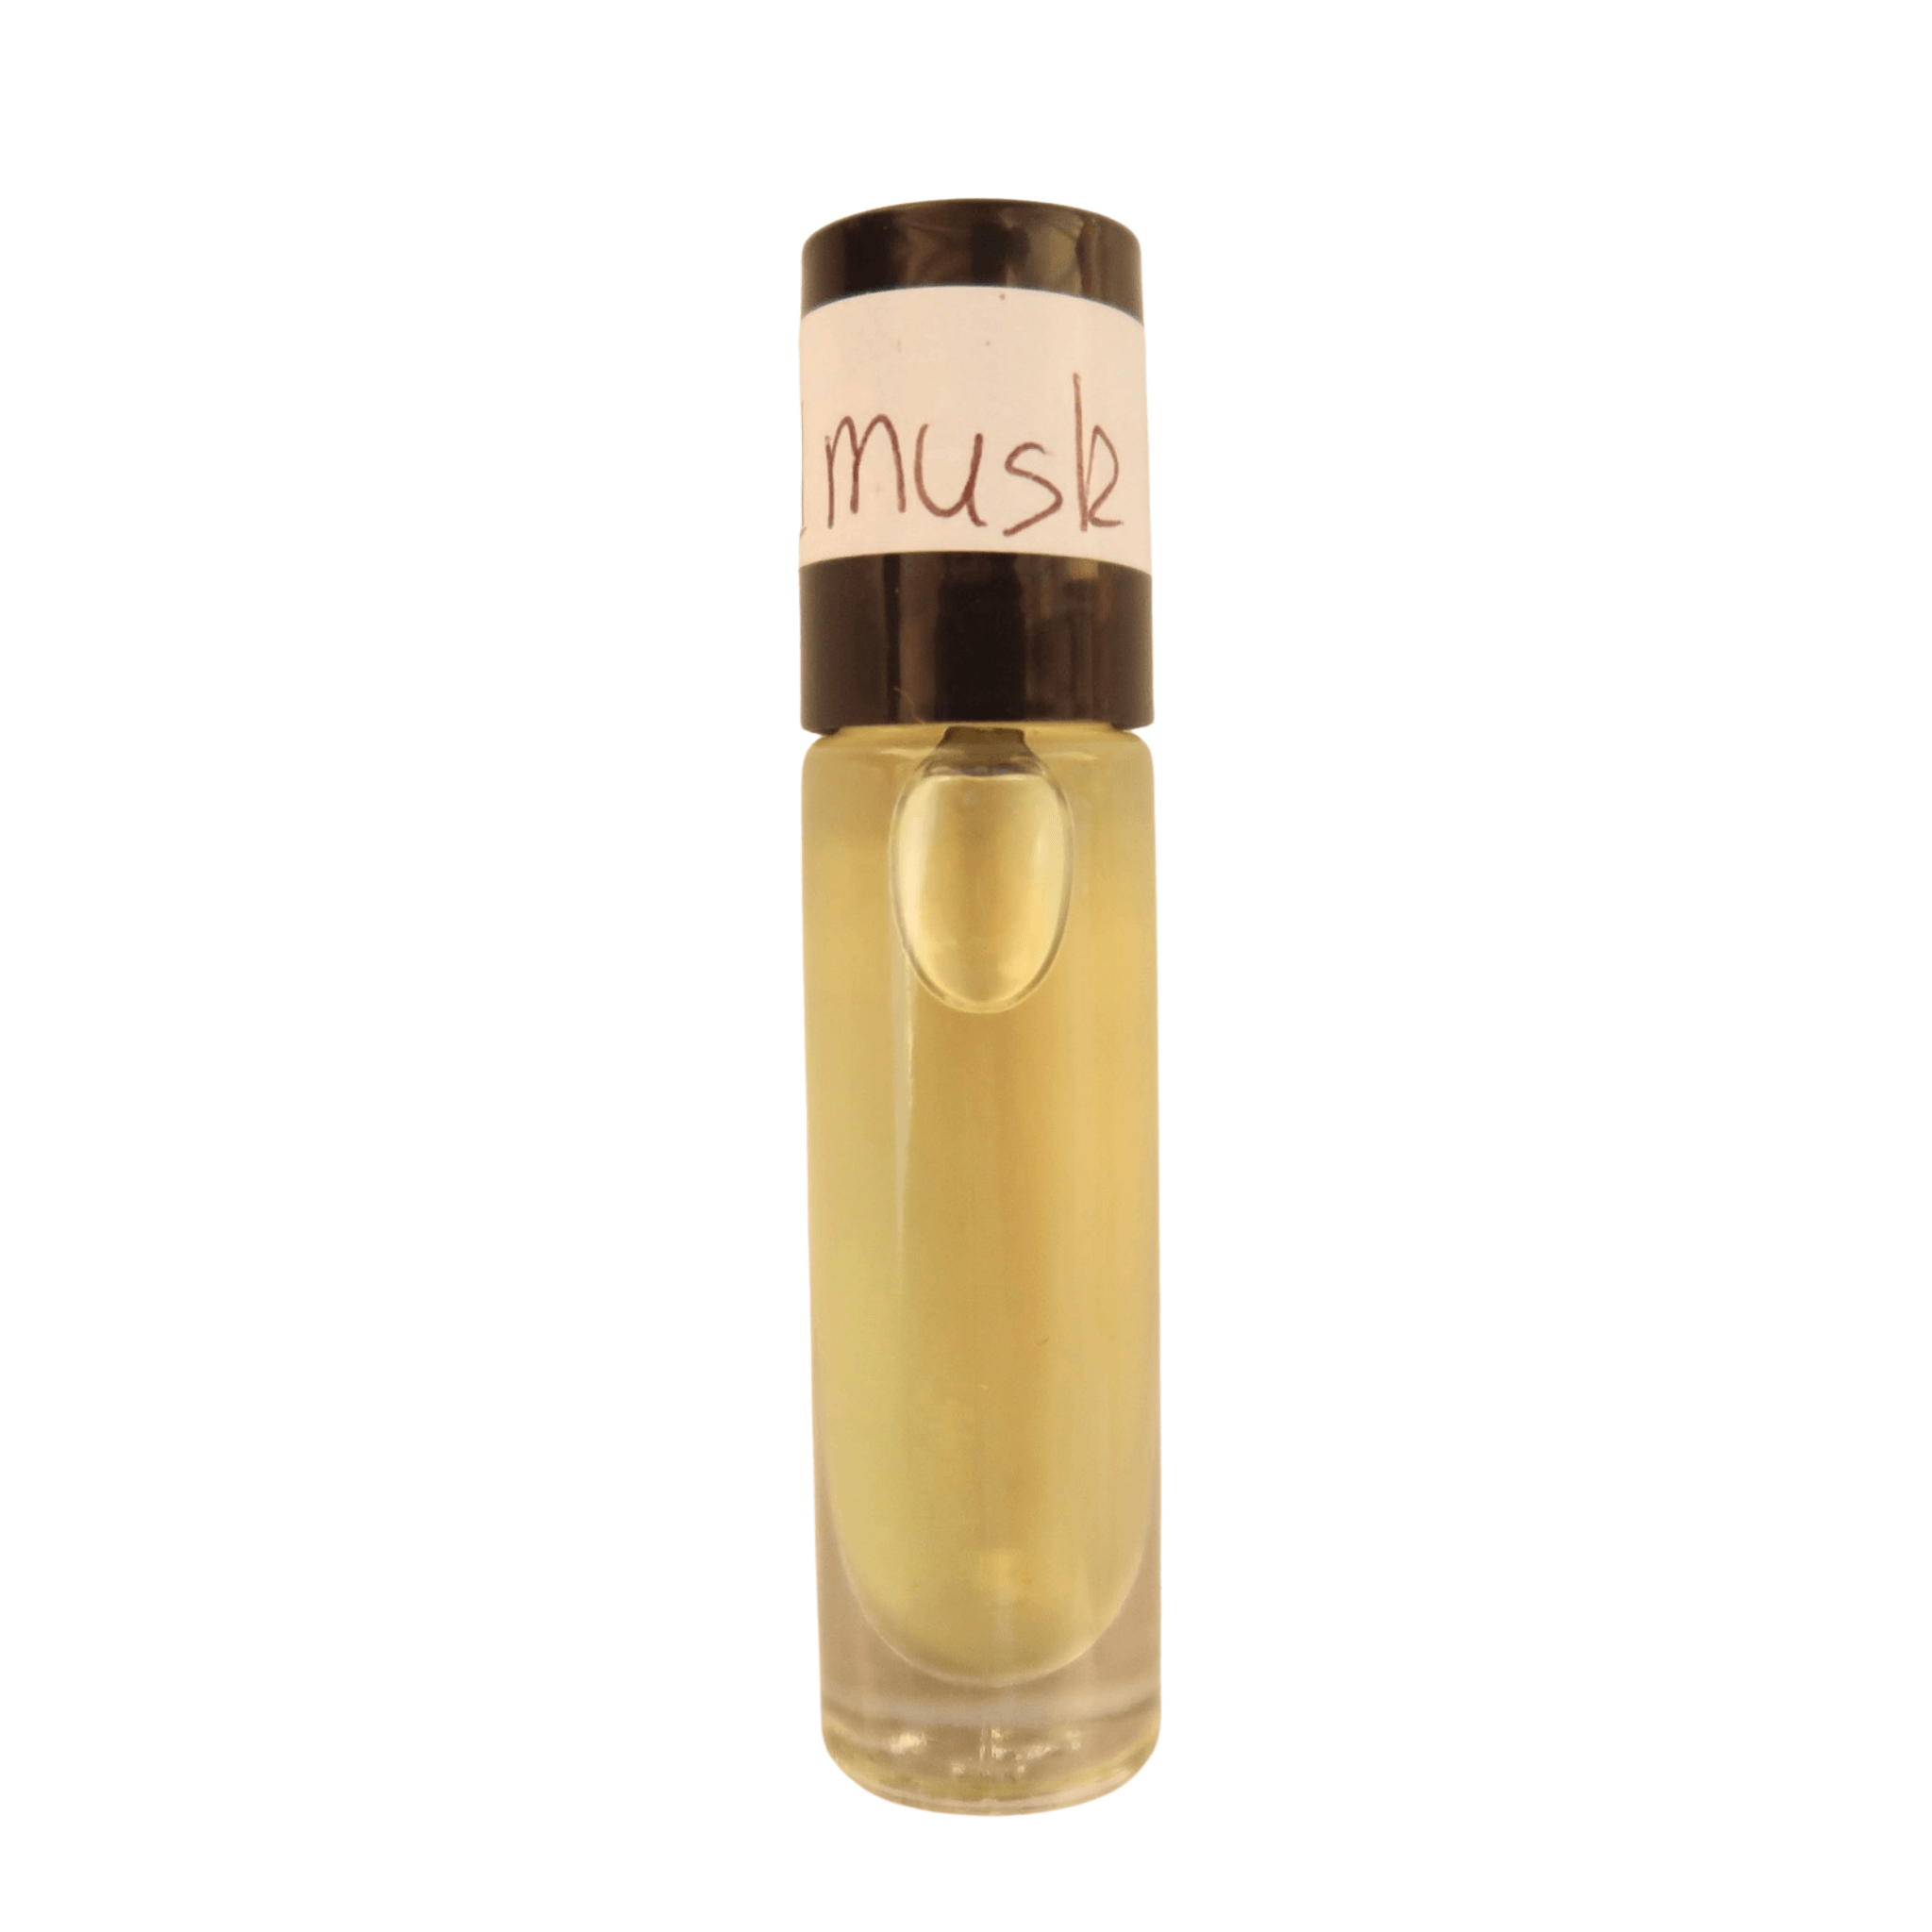 Gold musk body fragrance oil